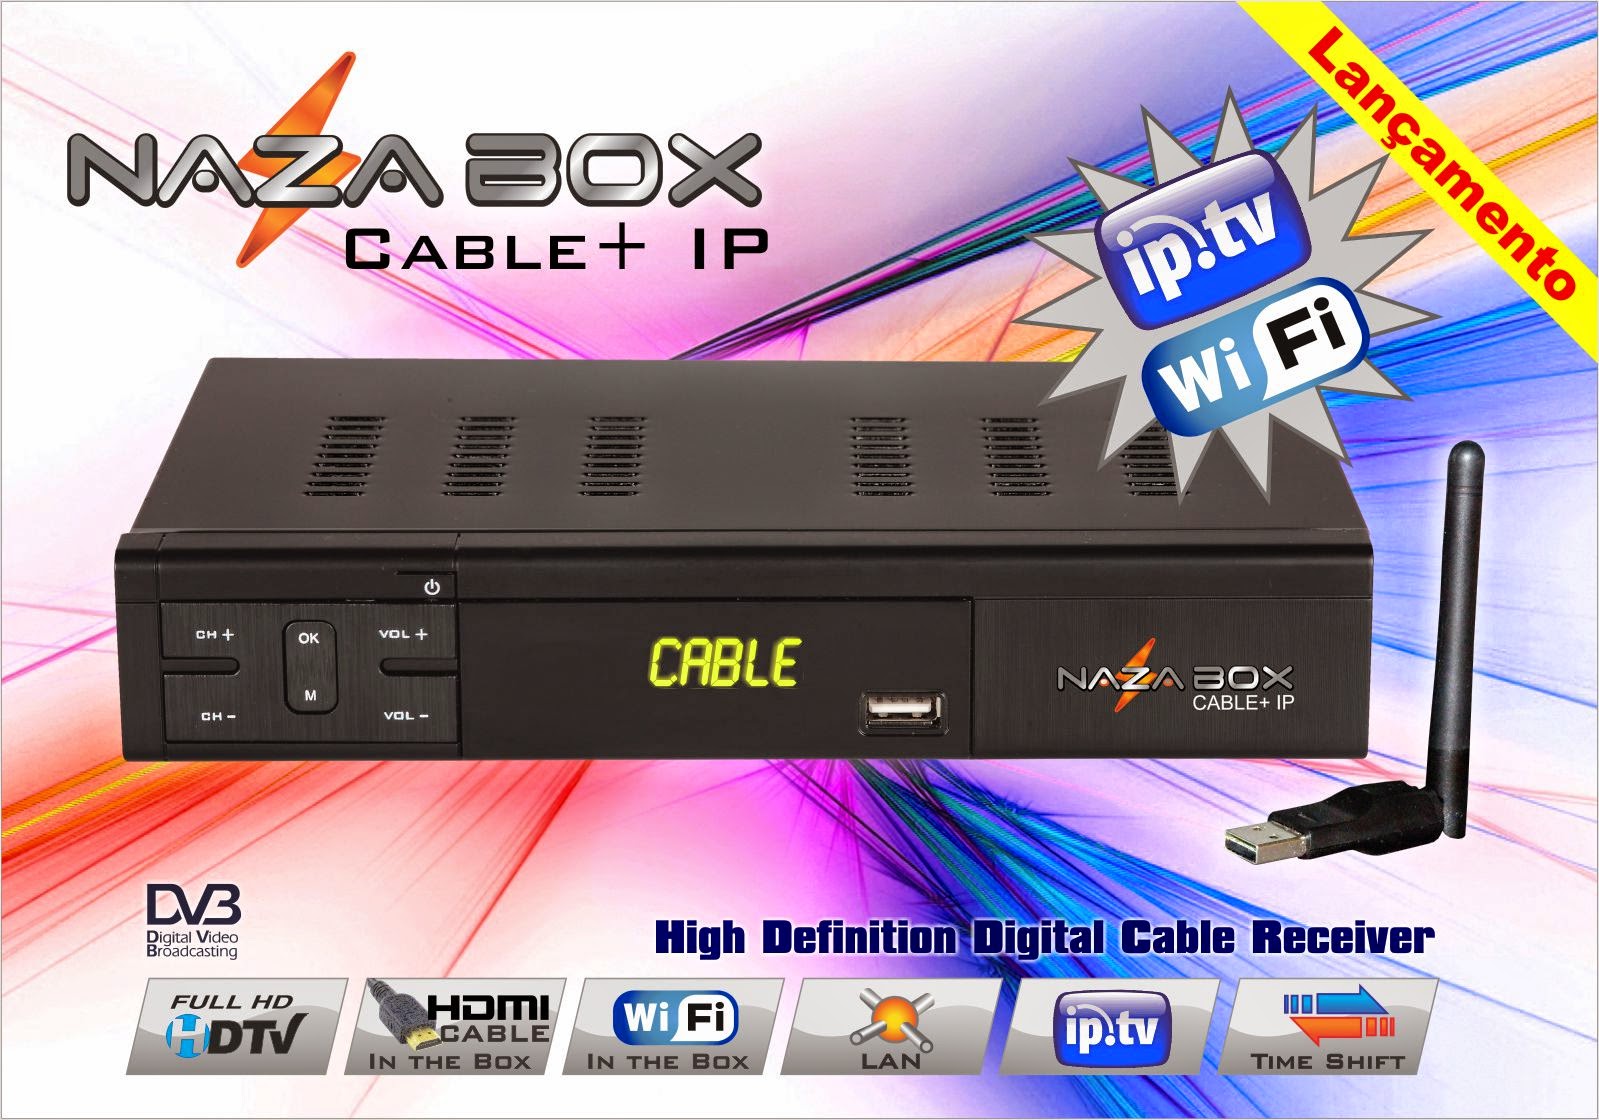 Nova Atualização Nazabox Cable +iptv   HD.data 02/07/2014. Panfleto+Cable++IP